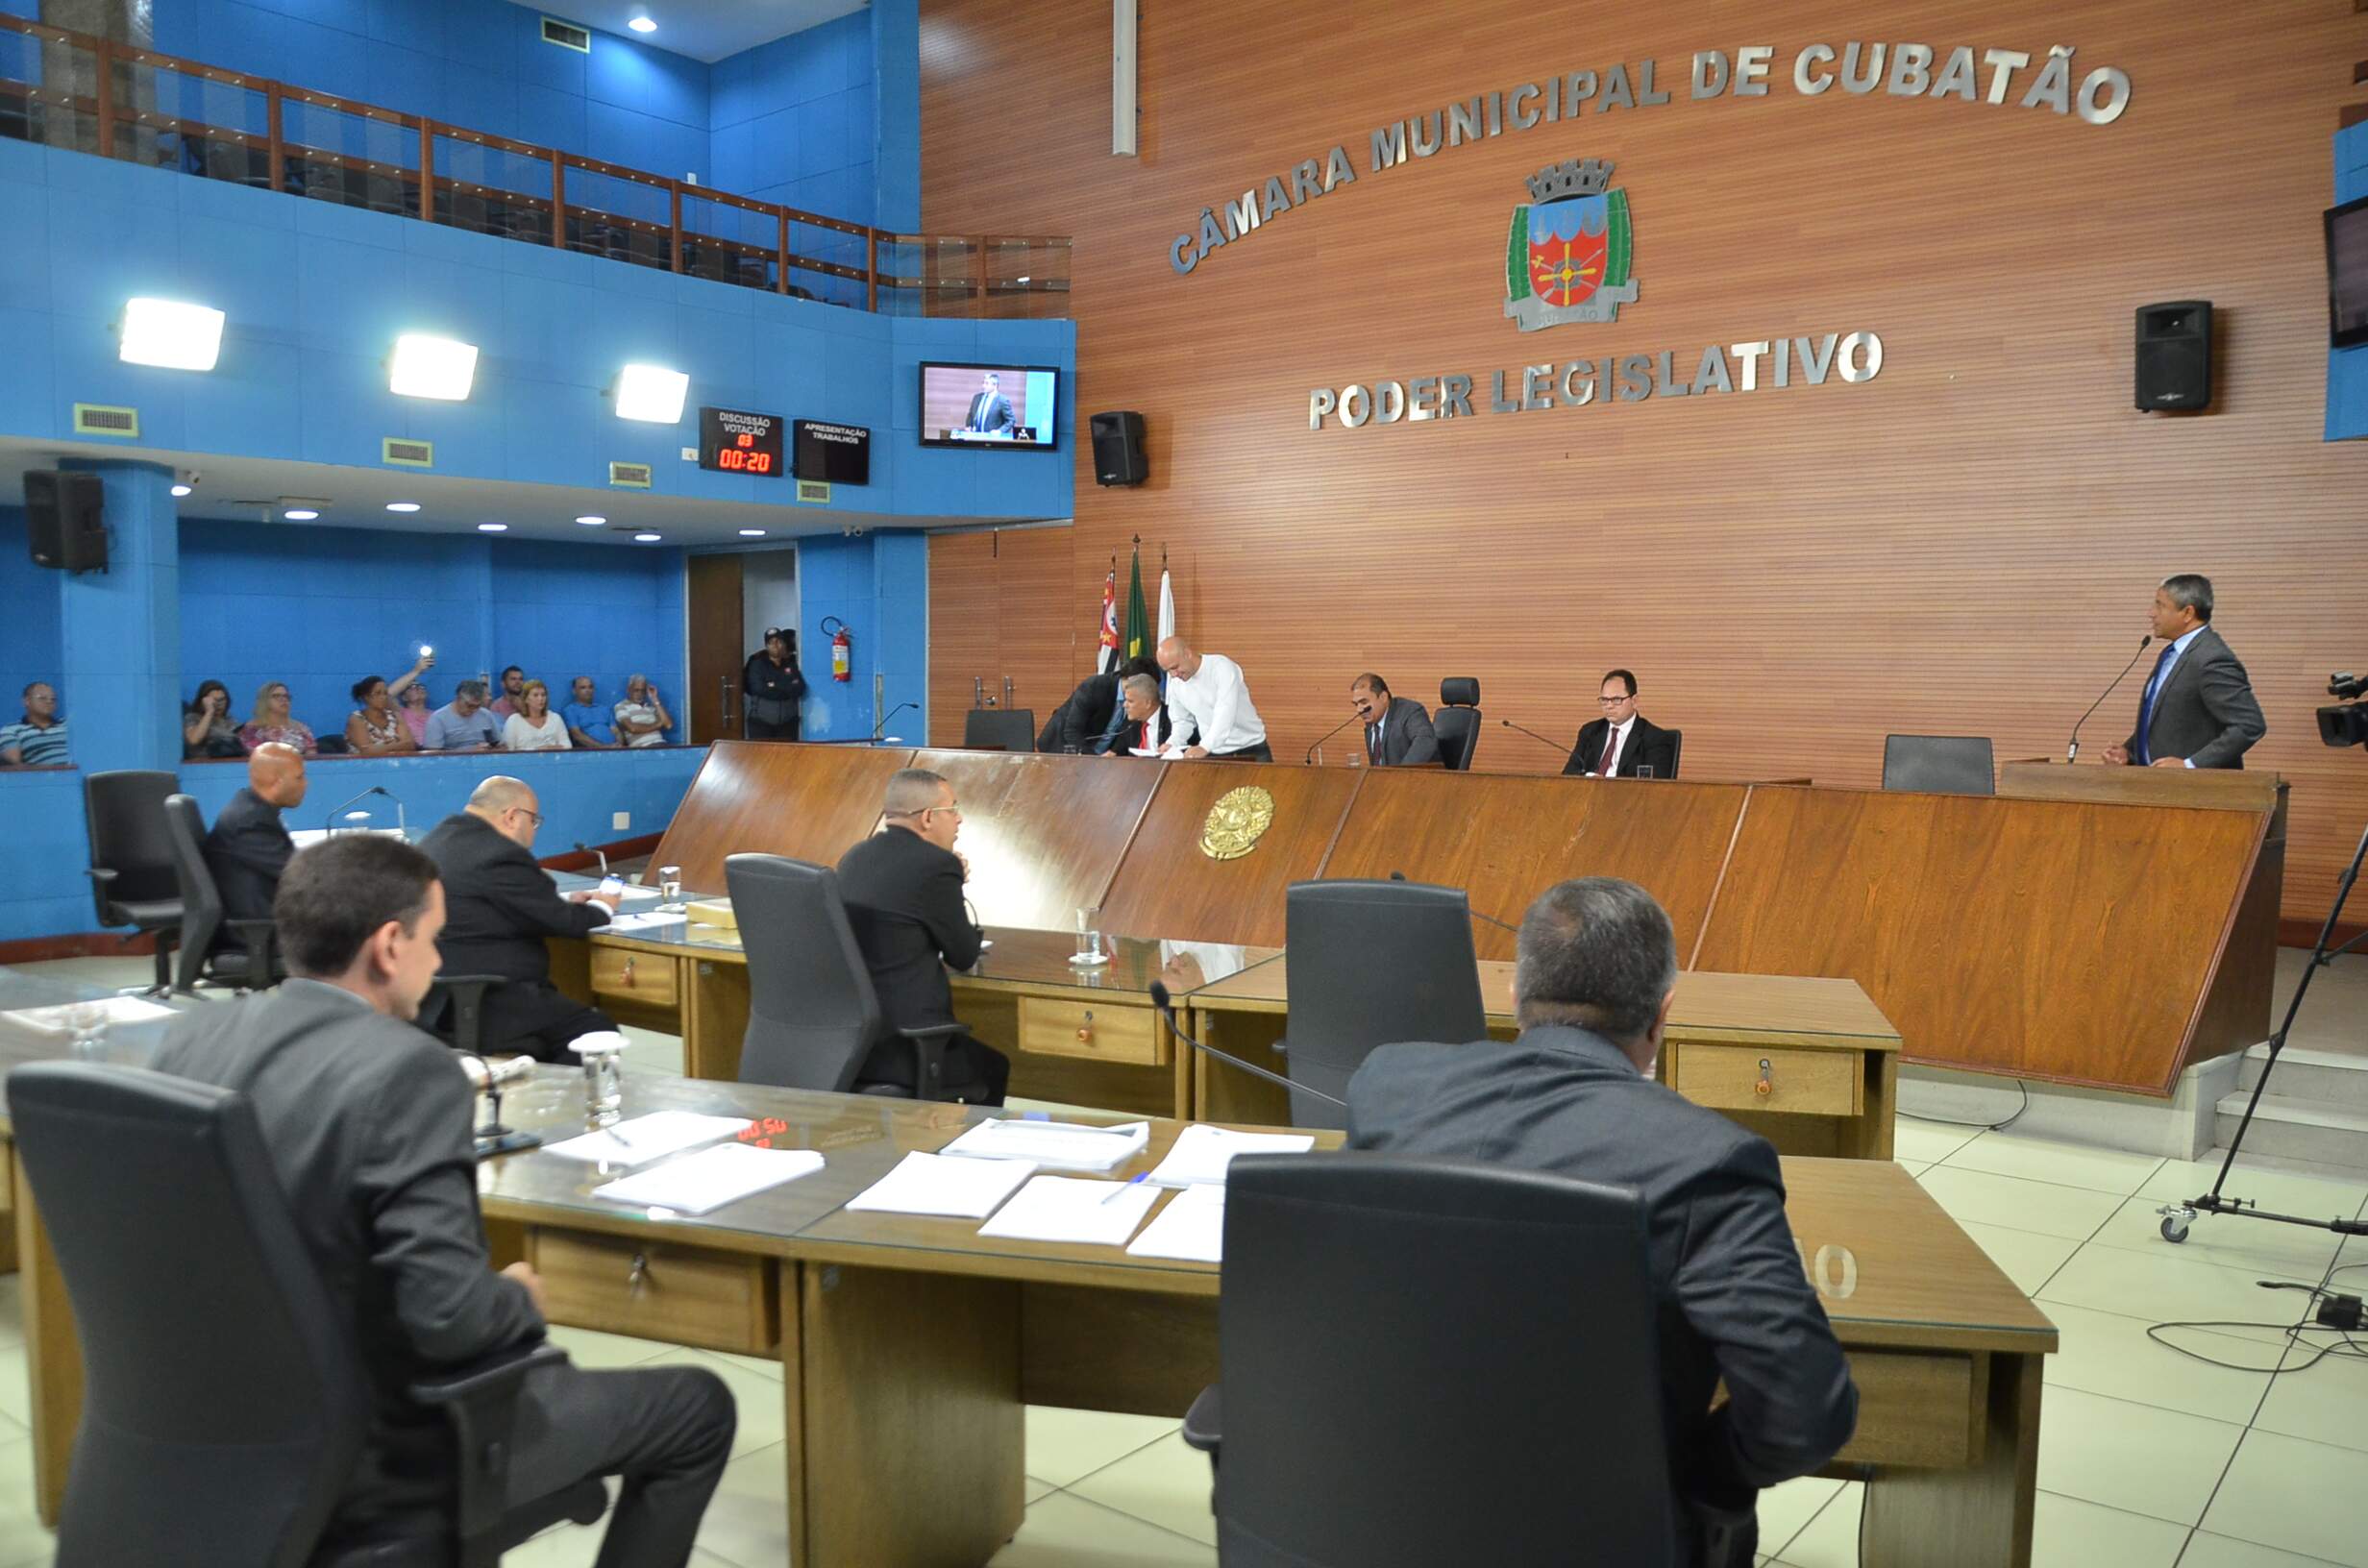 Câmara aprovou contratação temporária de funcionários em Cubatão